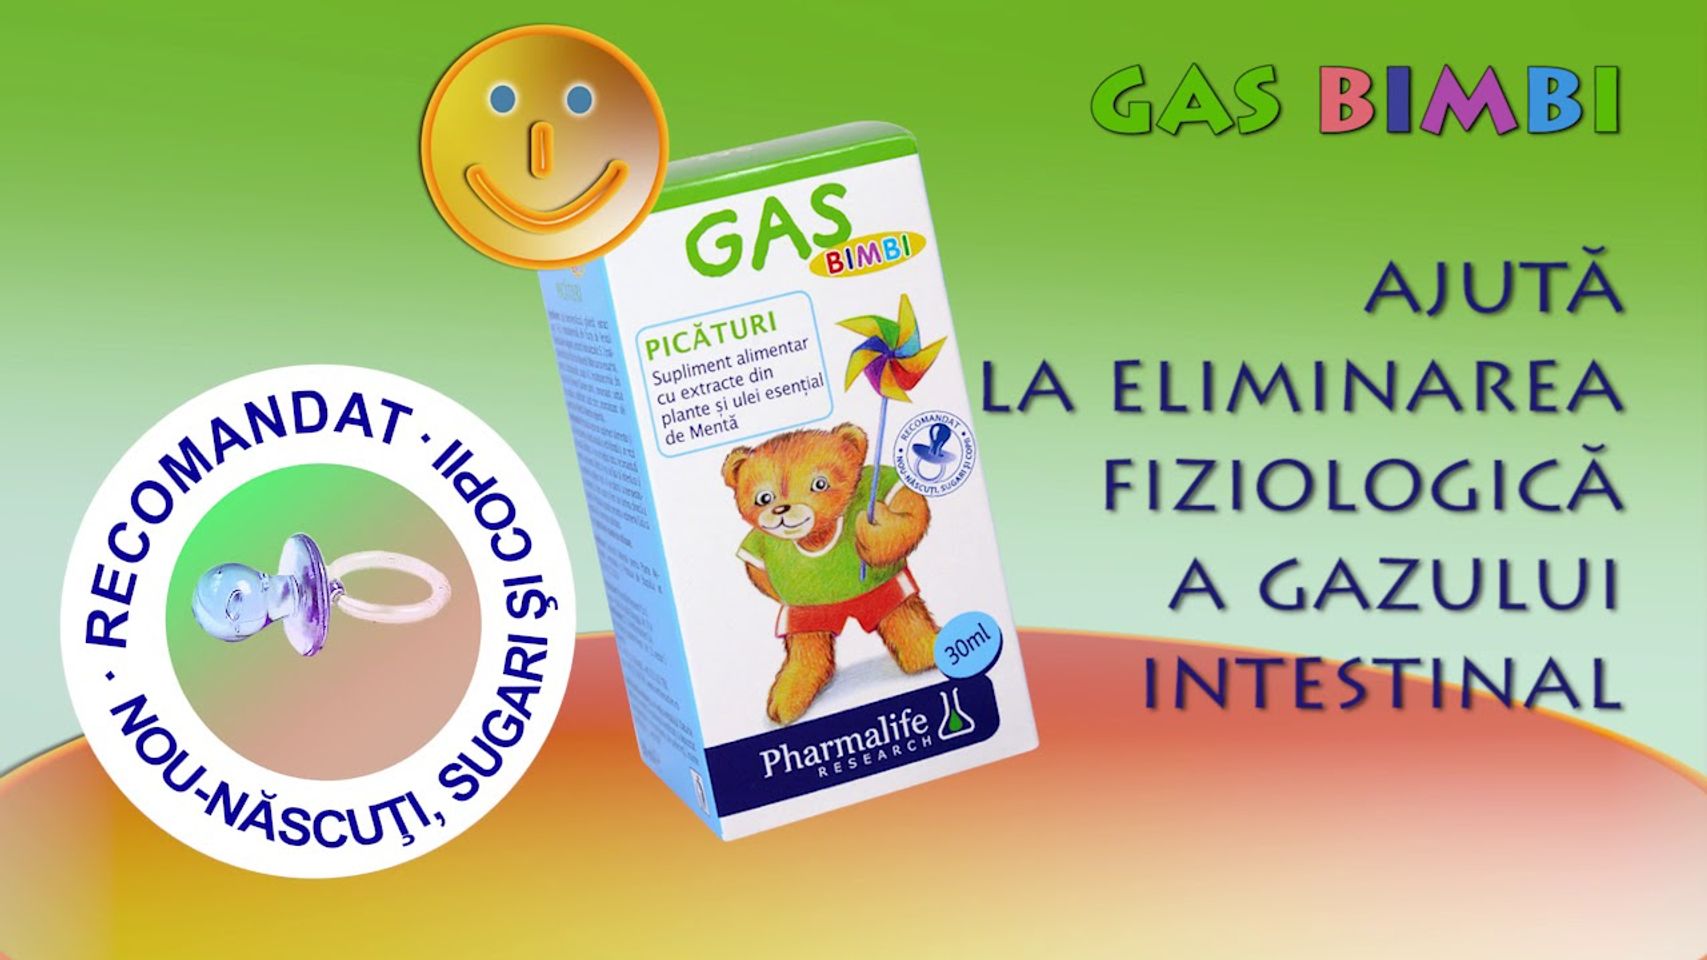 Thực phẩm bảo vệ sức khỏe GAS bimbi 2